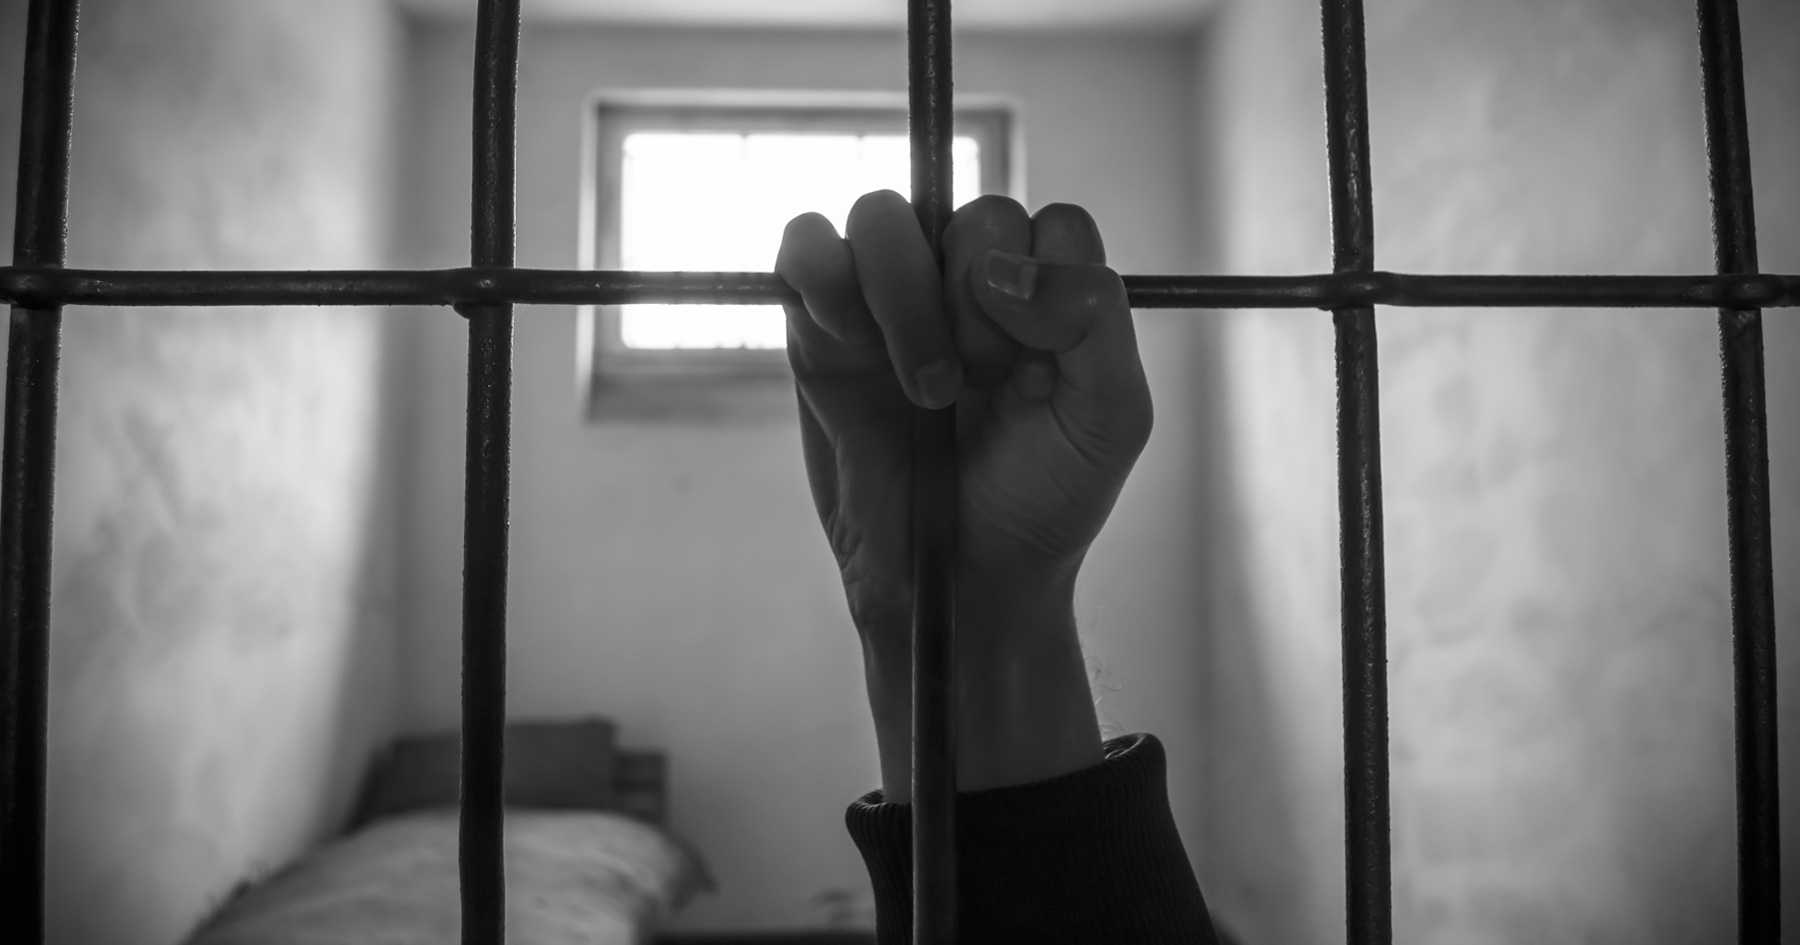 Prisoner's hand on the bars